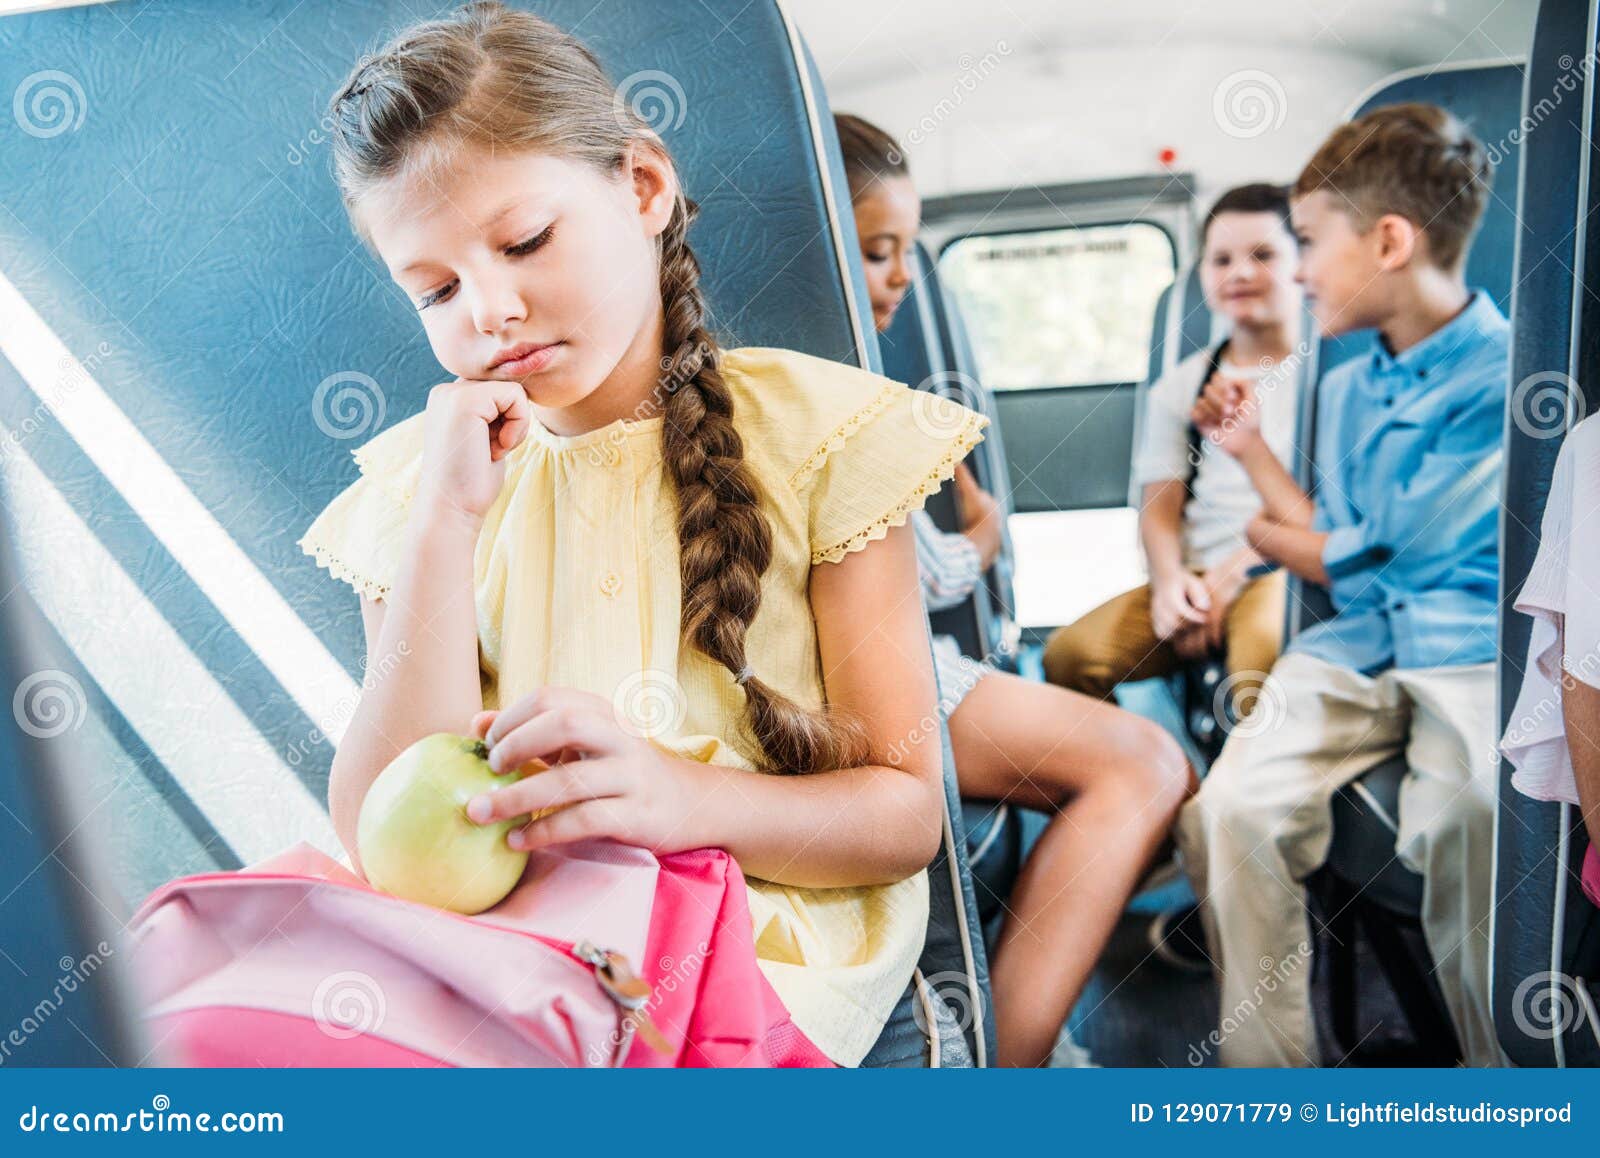 Schoolgirl Bus